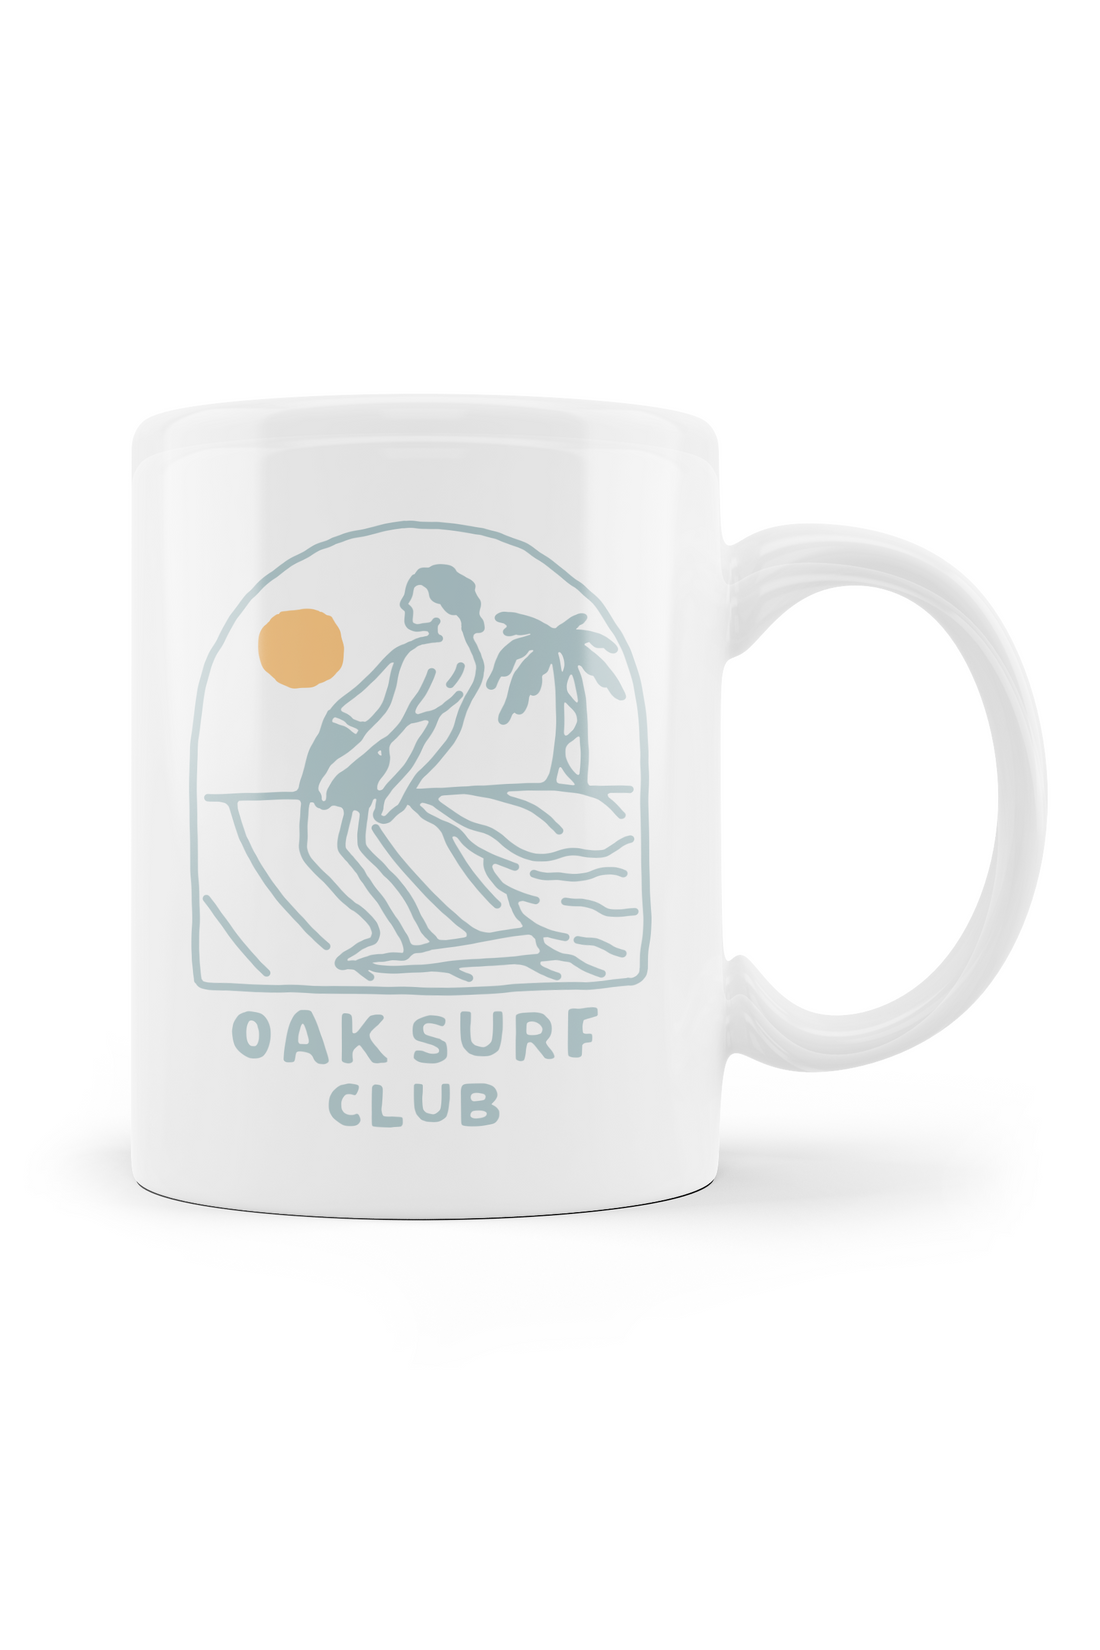 OAK SURF CLUB MUG 16OZ - NOSERIDER LOGO Mugs OAK SURF CLUB   